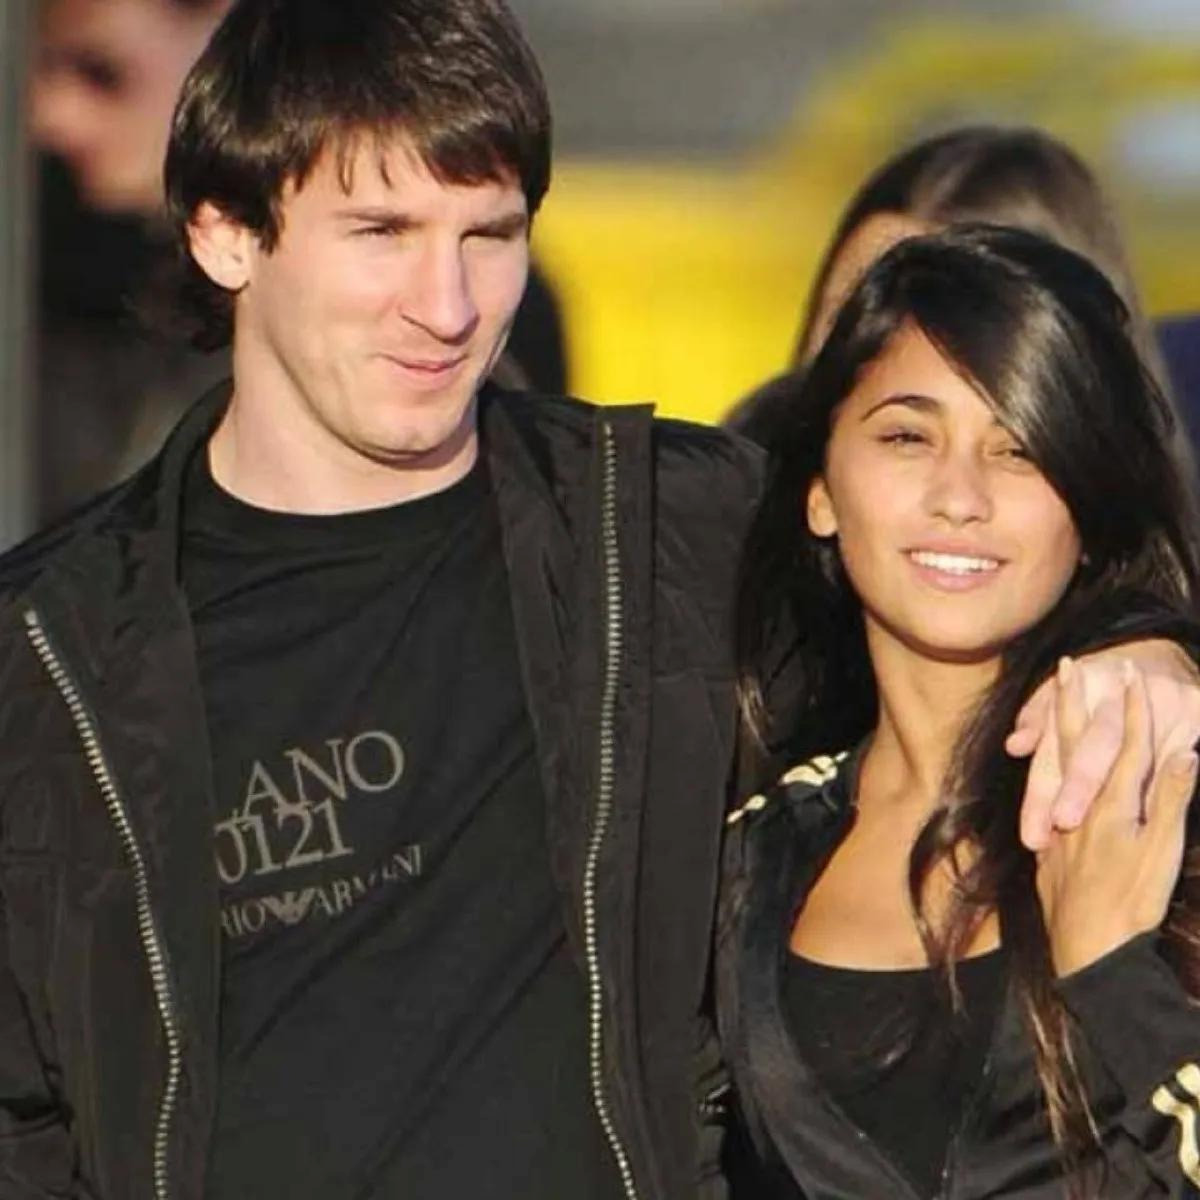 La historia de amor de Lionel Messi y Antonella Roccuzzo